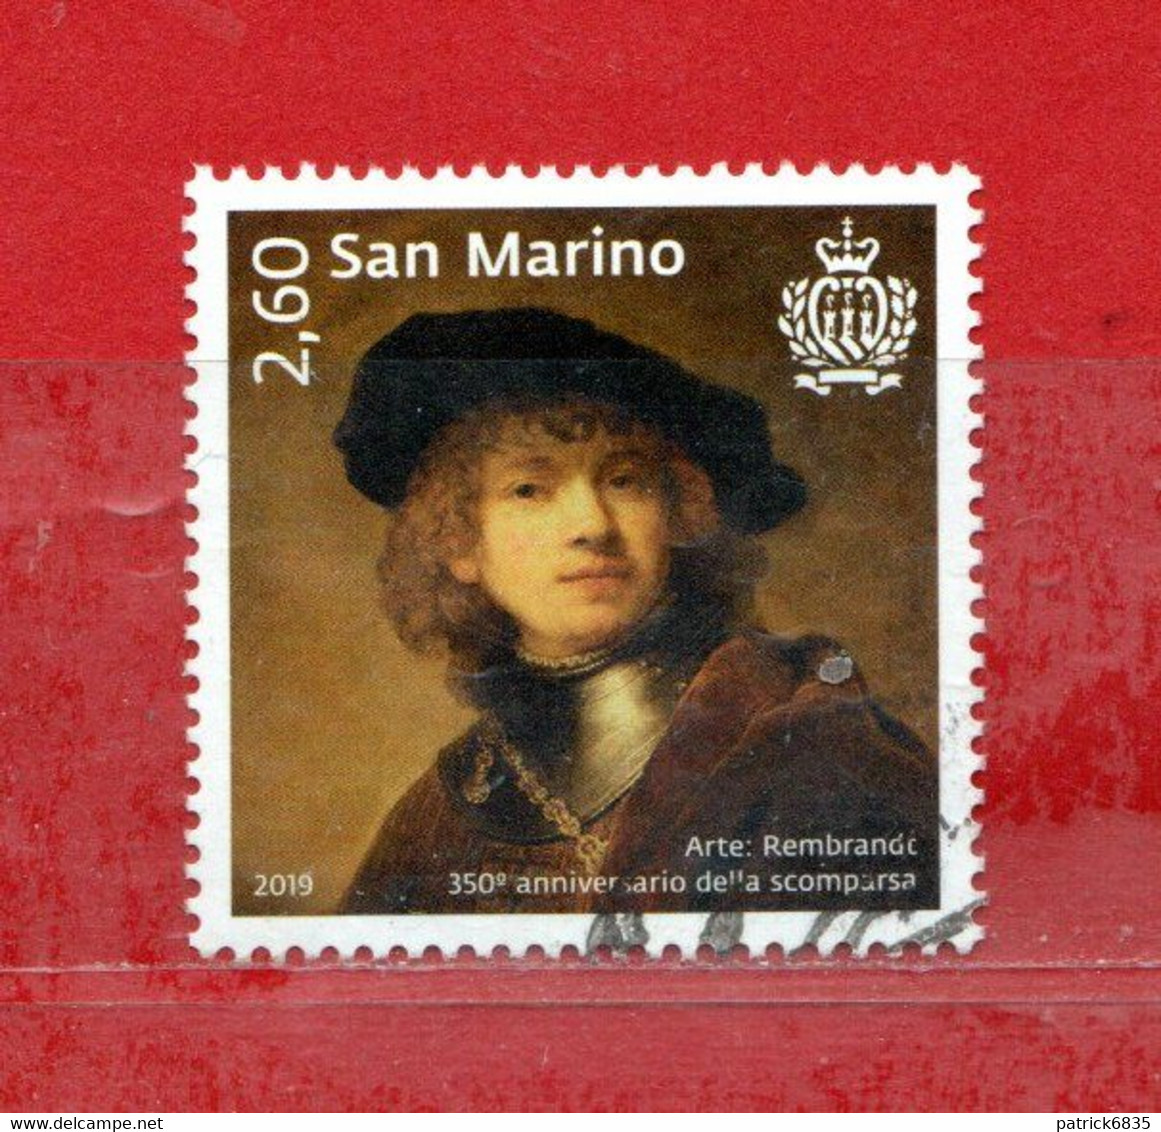 S.Marino ° 2019 - GRANDI ARTISTI - REMBRANDT. Unif. 2631.  Usato. - Used Stamps